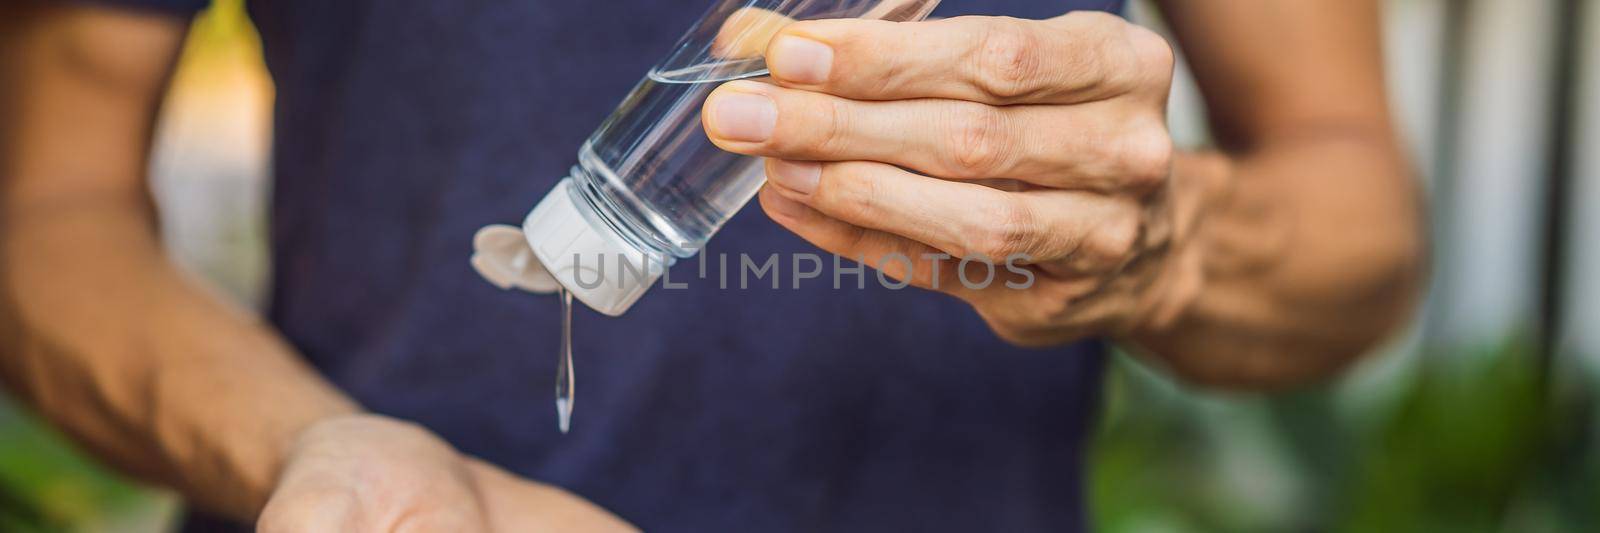 Men's hands using wash hand sanitizer gel. BANNER, LONG FORMAT